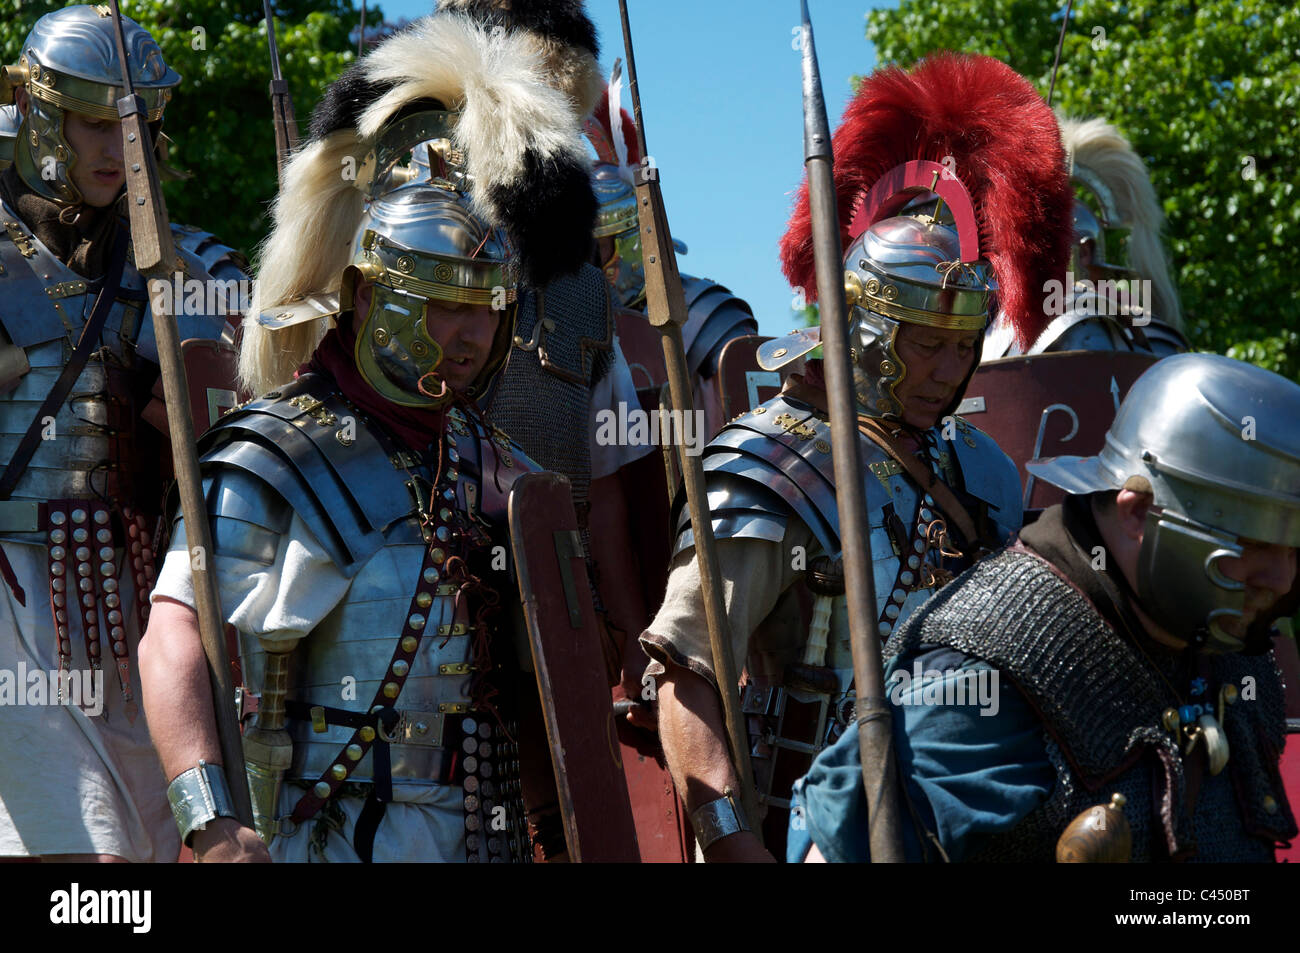 Römische Soldaten der Leg ii avg Historische Re-enactment-Gruppe auf einem Display in Maumbury Rings, Dorchester, Dorset, England, Vereinigtes Königreich. Stockfoto